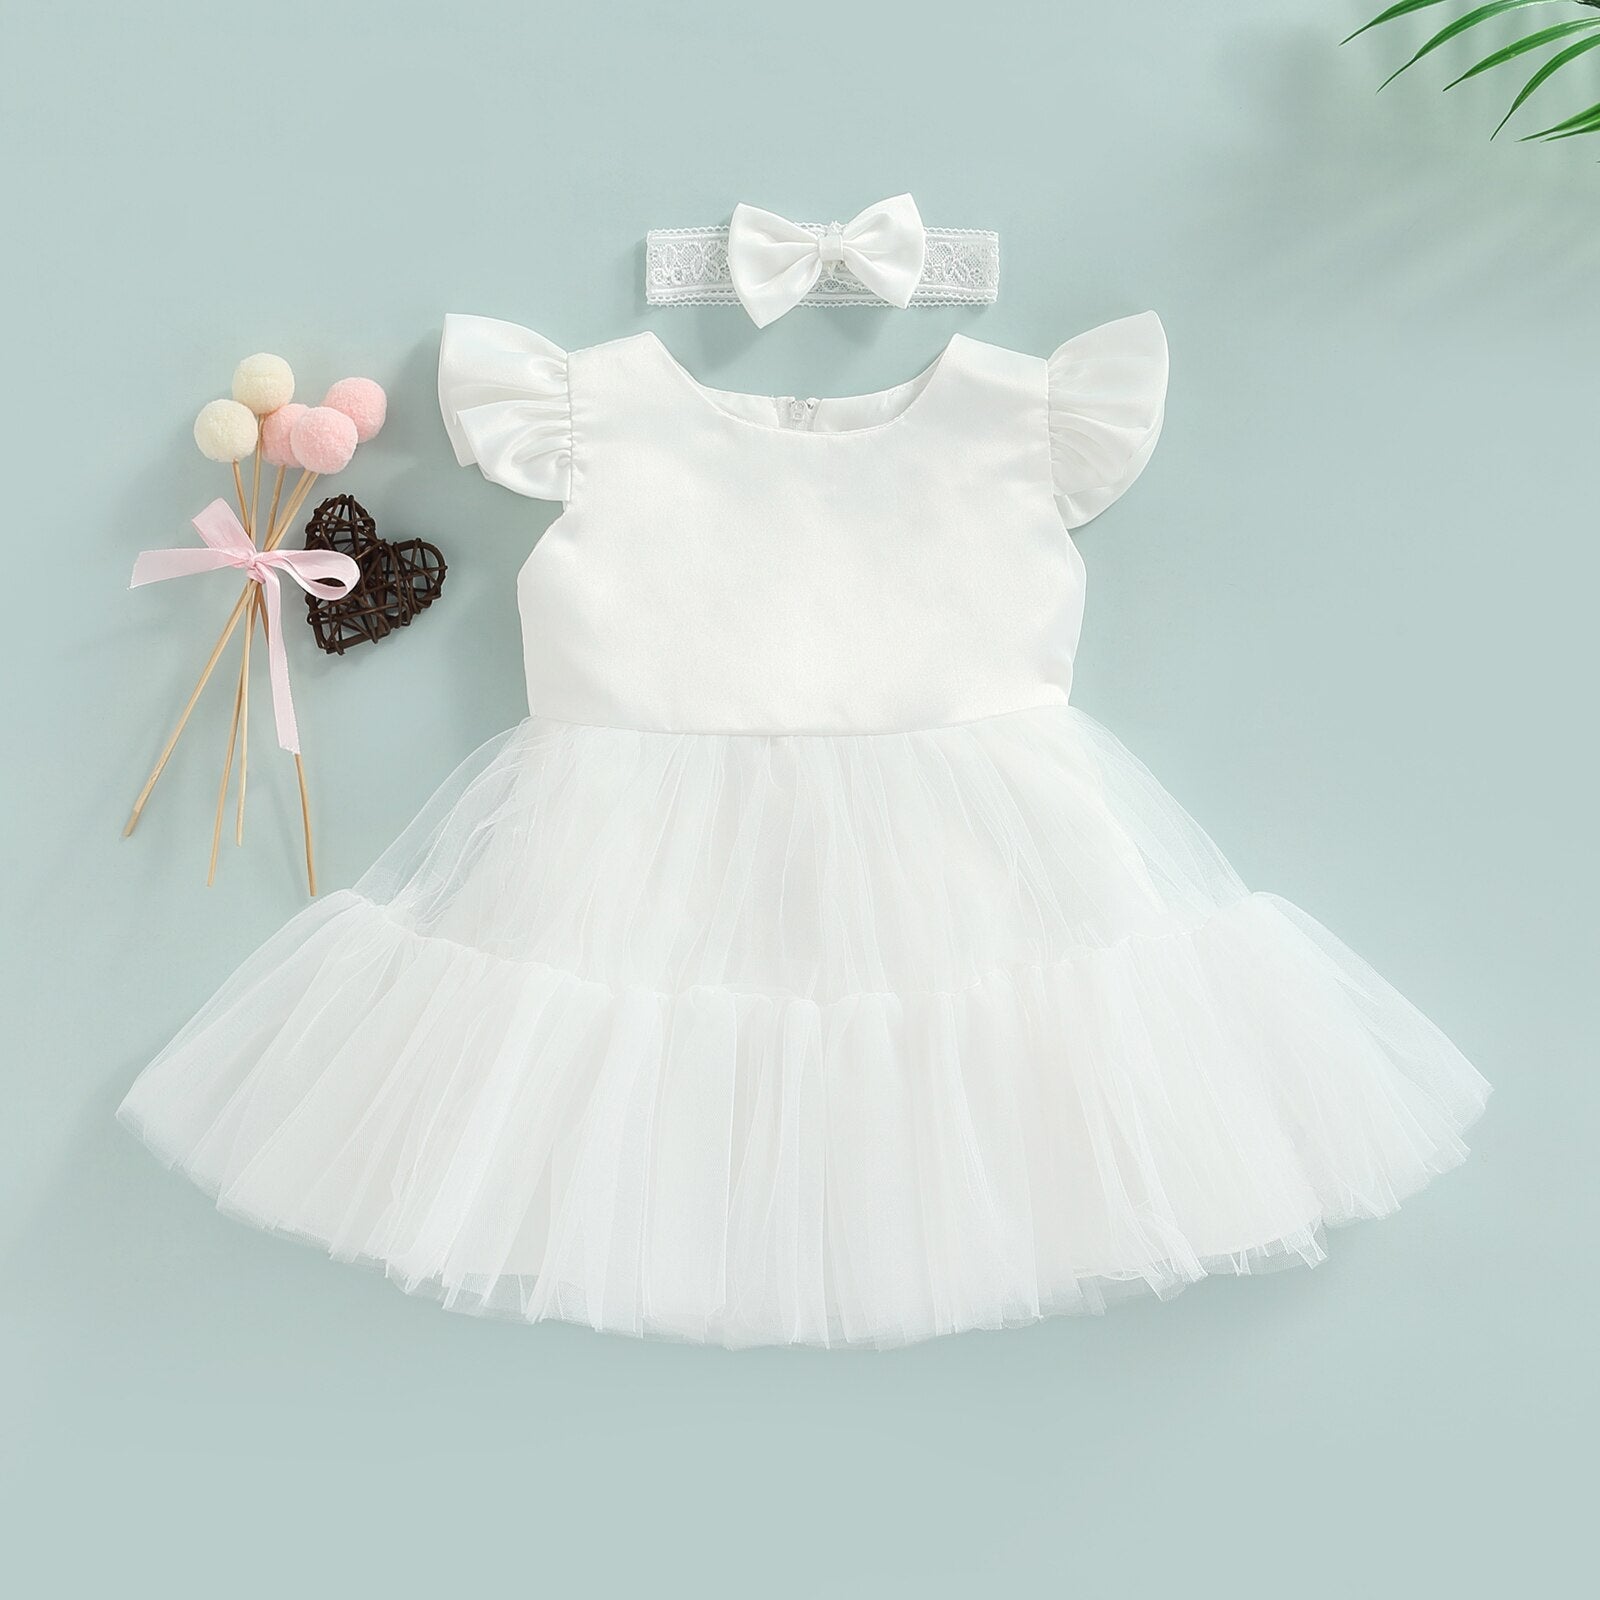 Vestido Infantil + Lacinho Tule vestido Loja Click Certo Branco 2-3 anos 57cm 